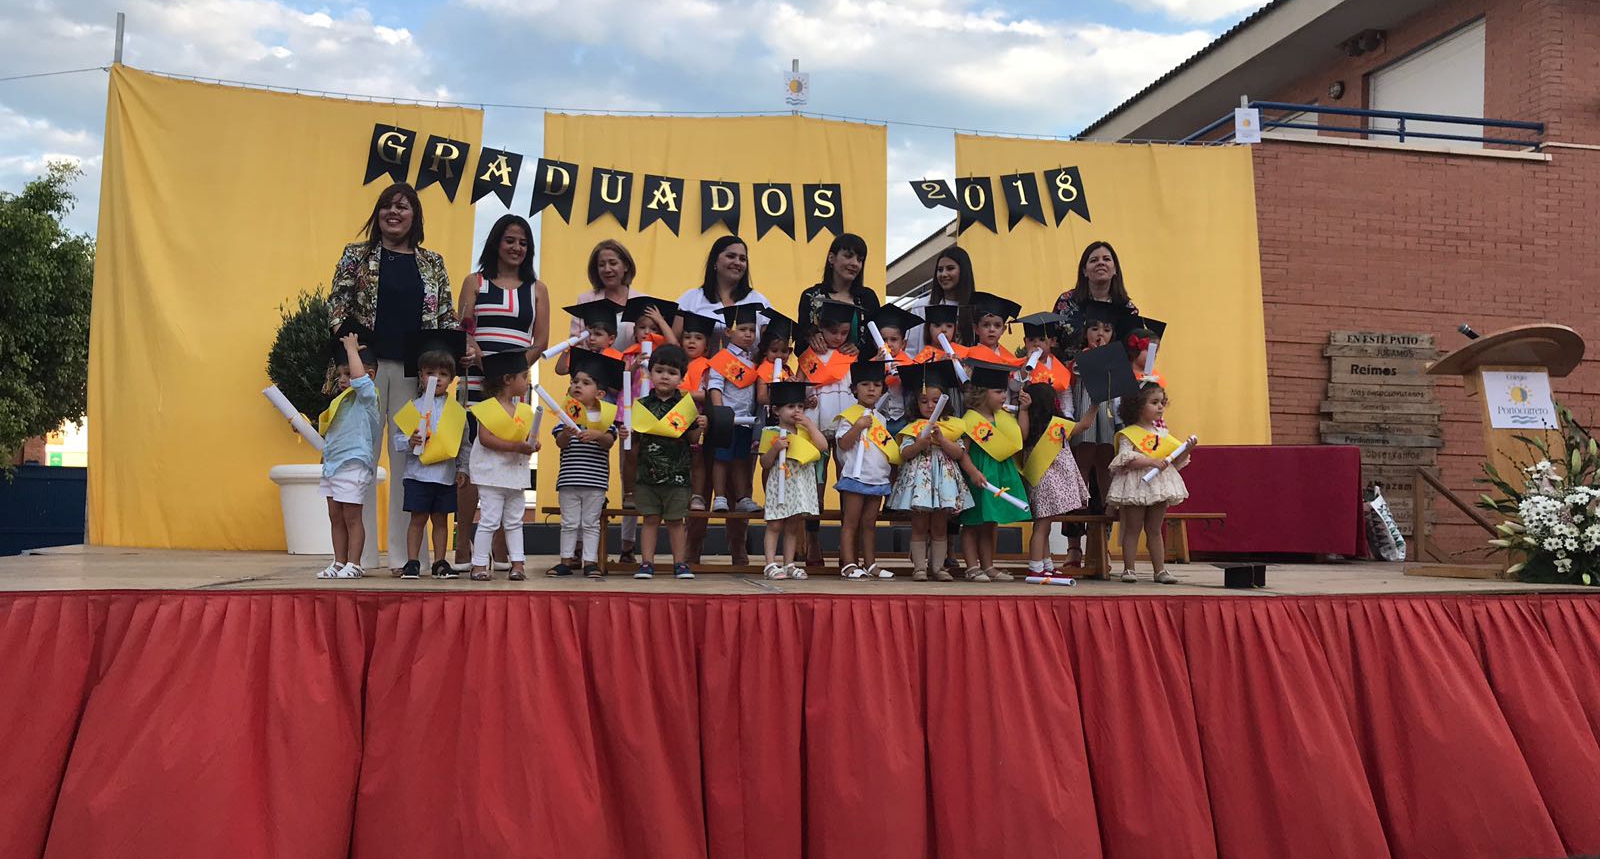 2018 06 13 Graduacion 1 ciclo infantil